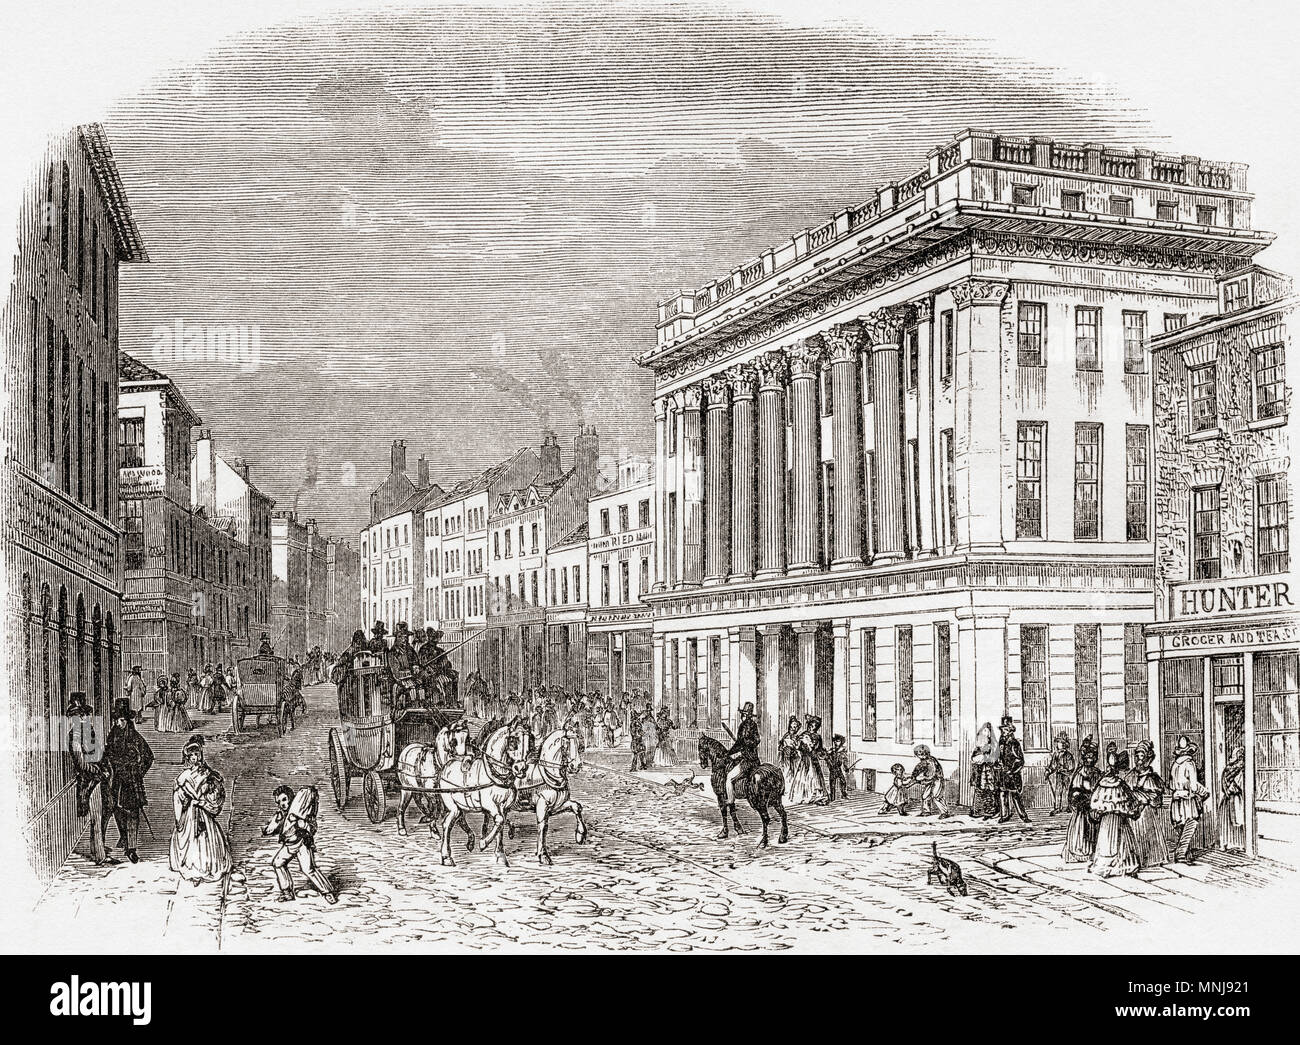 La Royal Arcade, Pilgrim Street, Newcastle-upon-Tyne, en Angleterre, qu'on voit ici au 19ème siècle, le bâtiment a été démoli en 1963. À partir de la vieille Angleterre : A Pictorial Museum, publié 1847. Banque D'Images